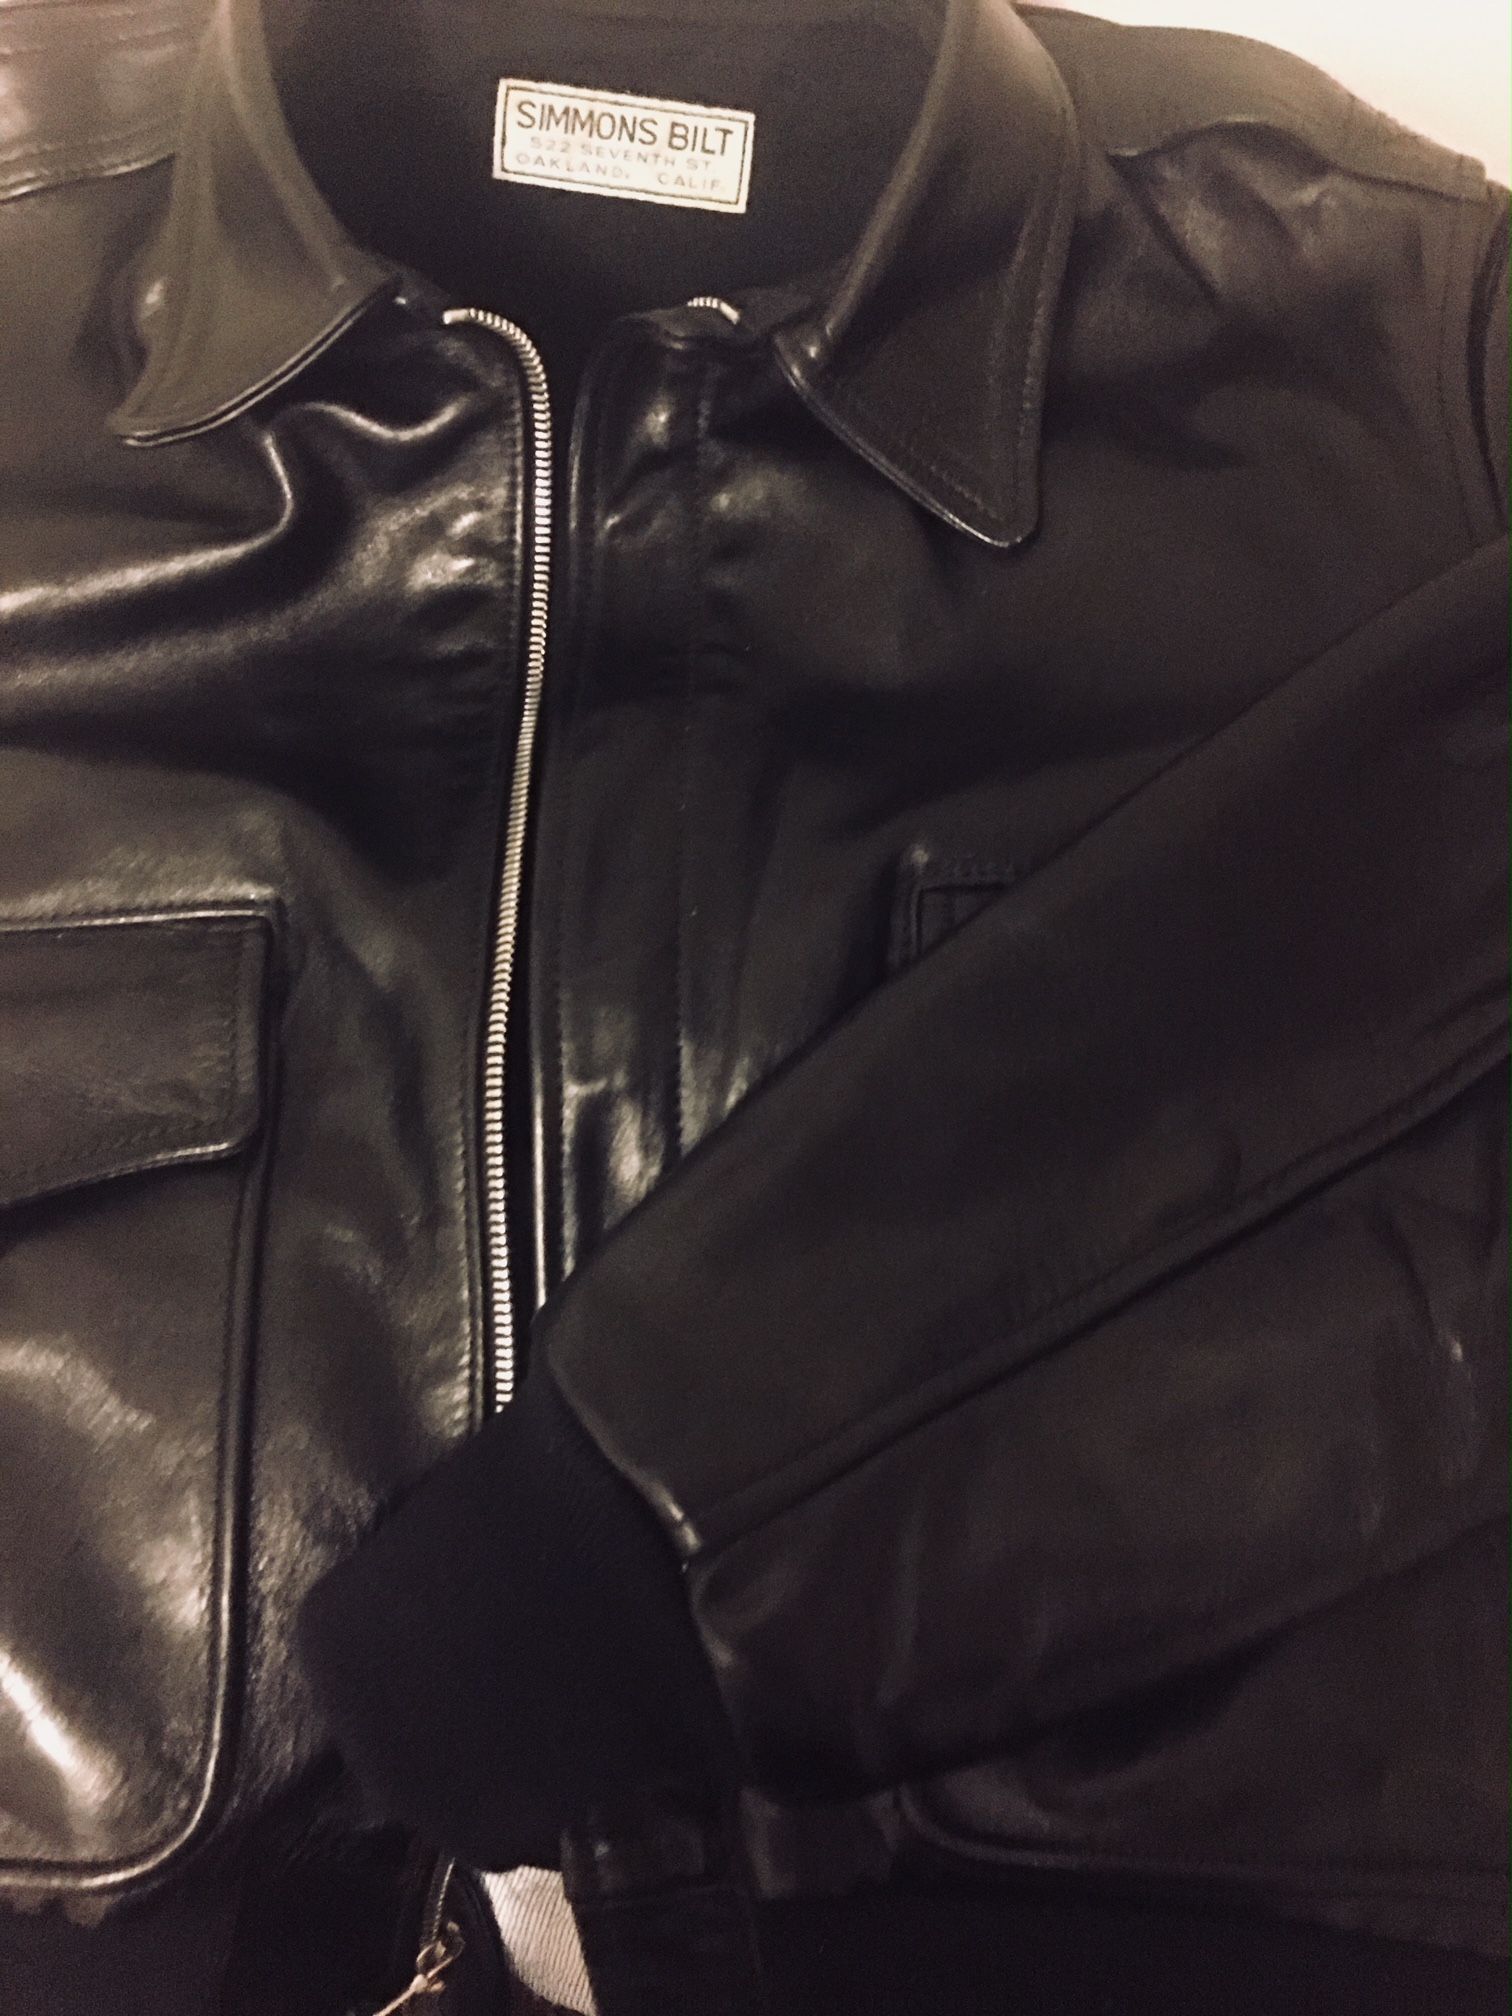 SB Memphis | Vintage Leather Jackets Forum